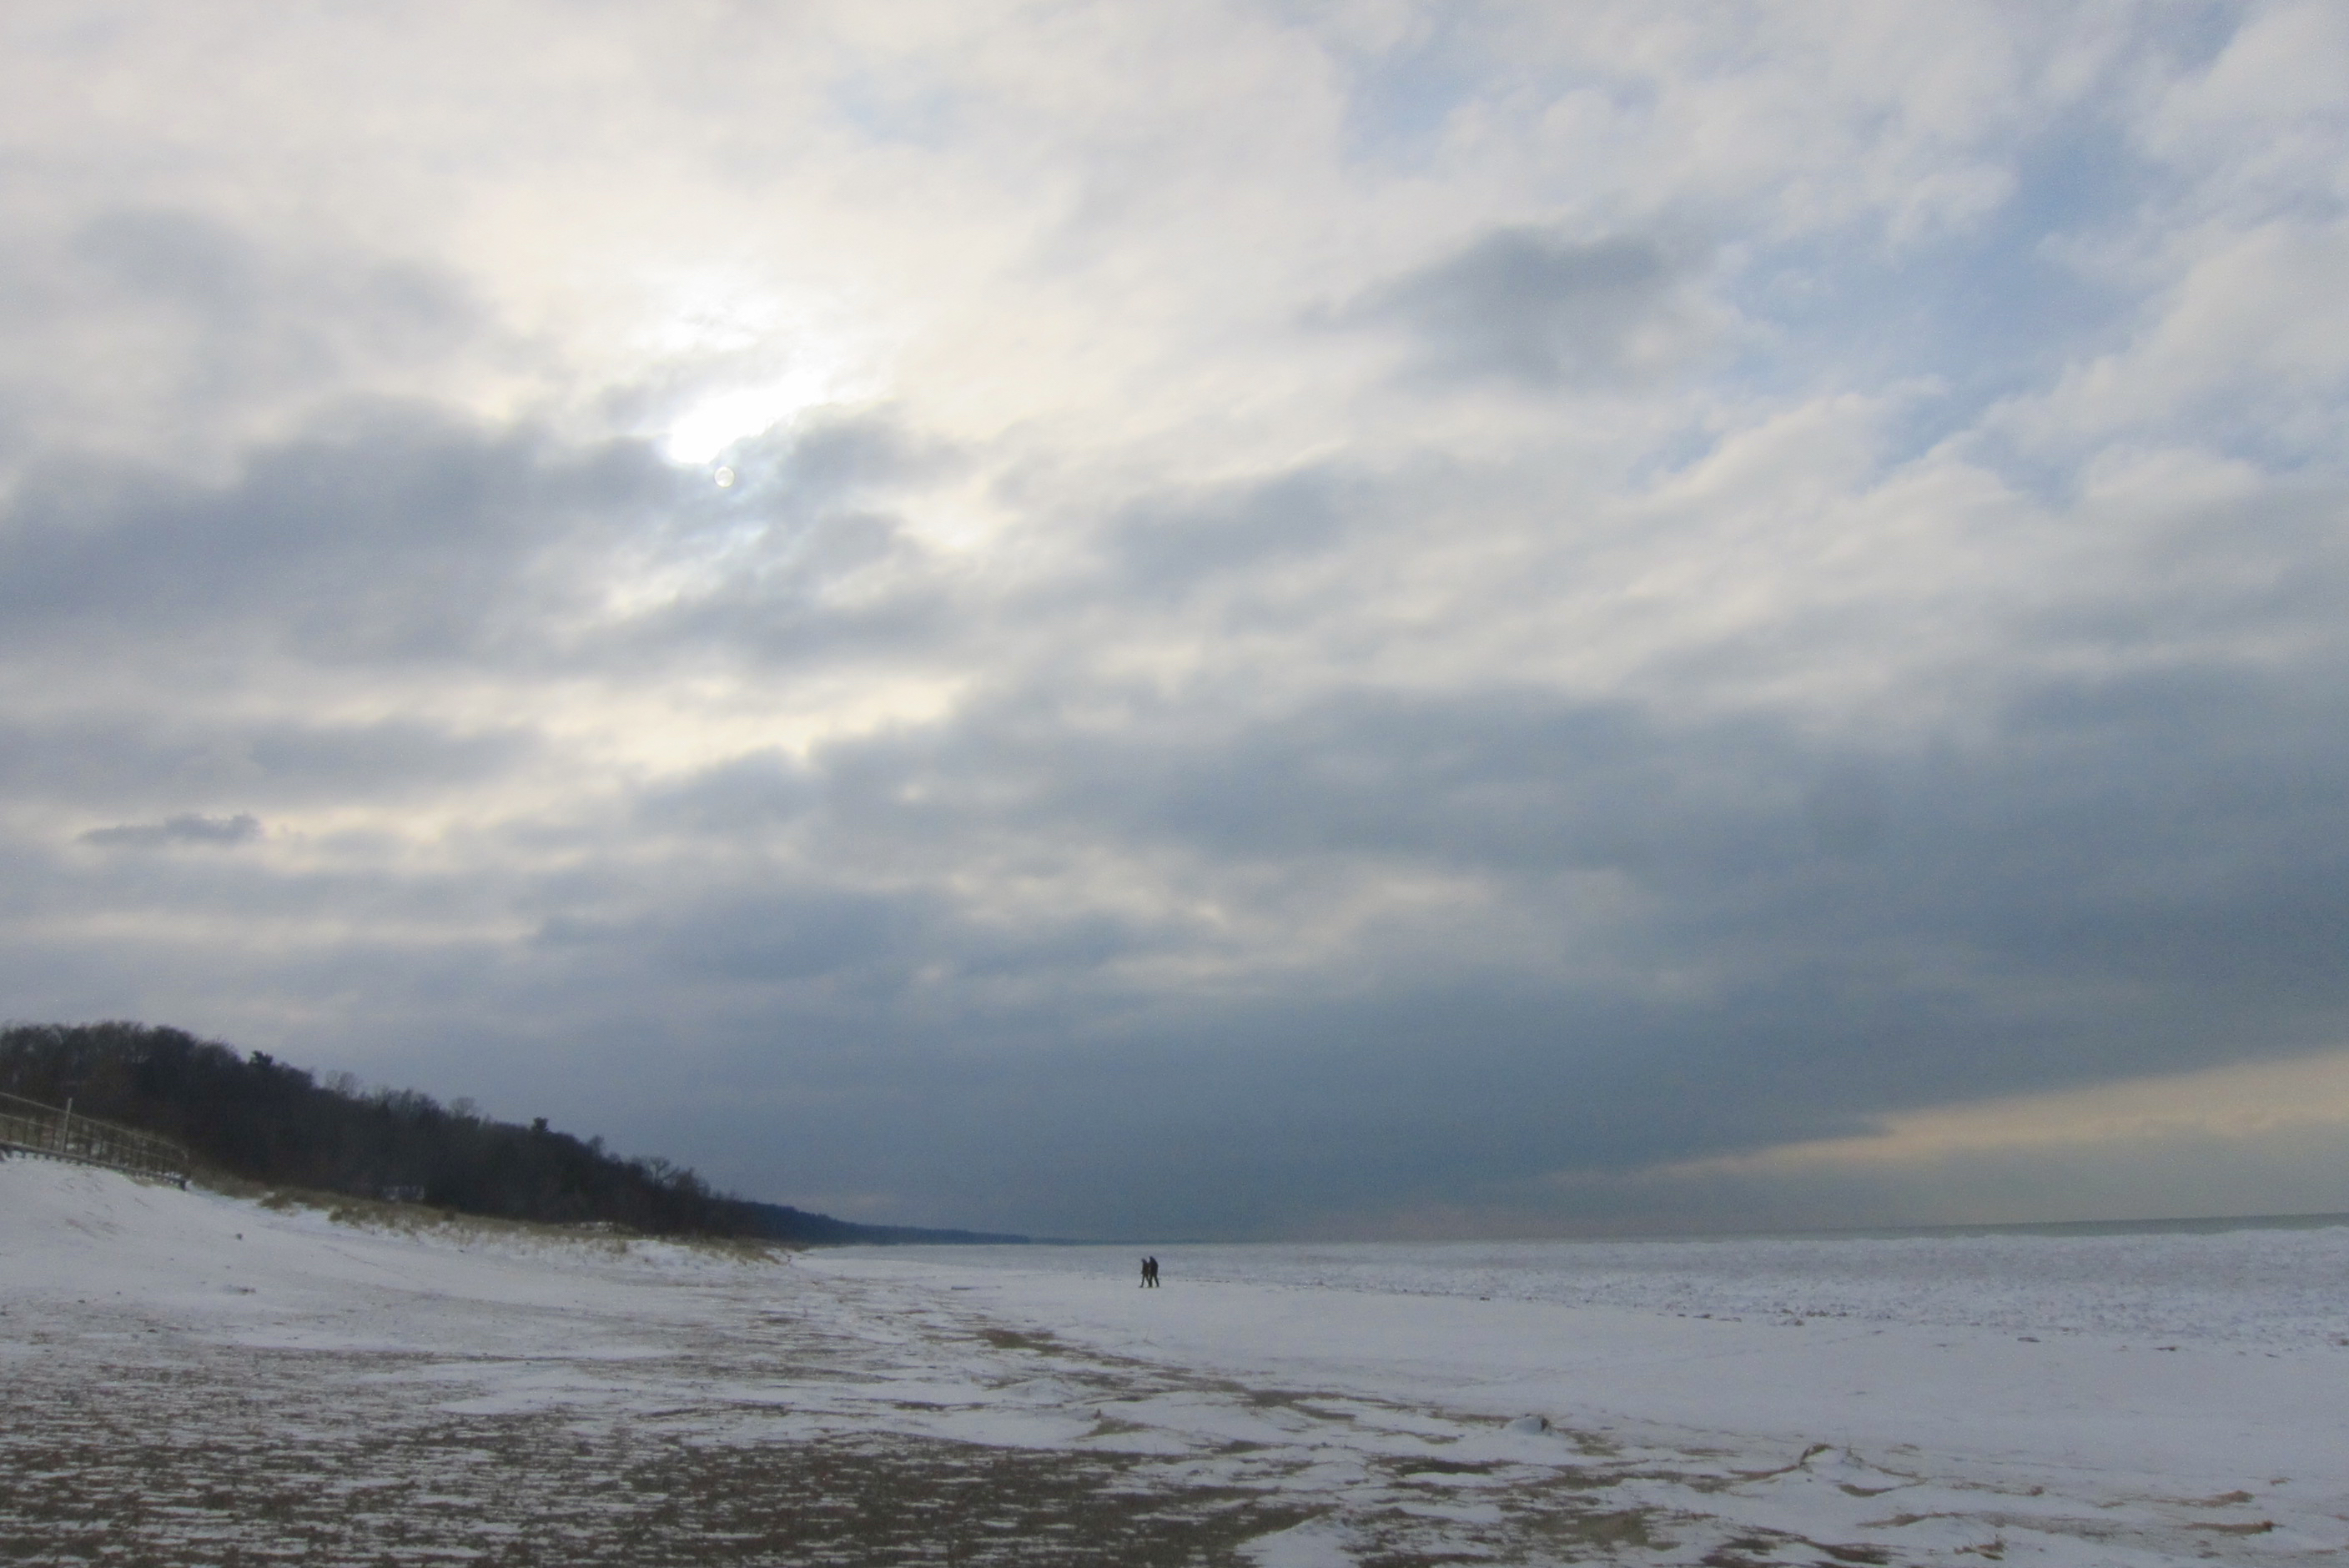 The shore of Lake Michigan in winter.